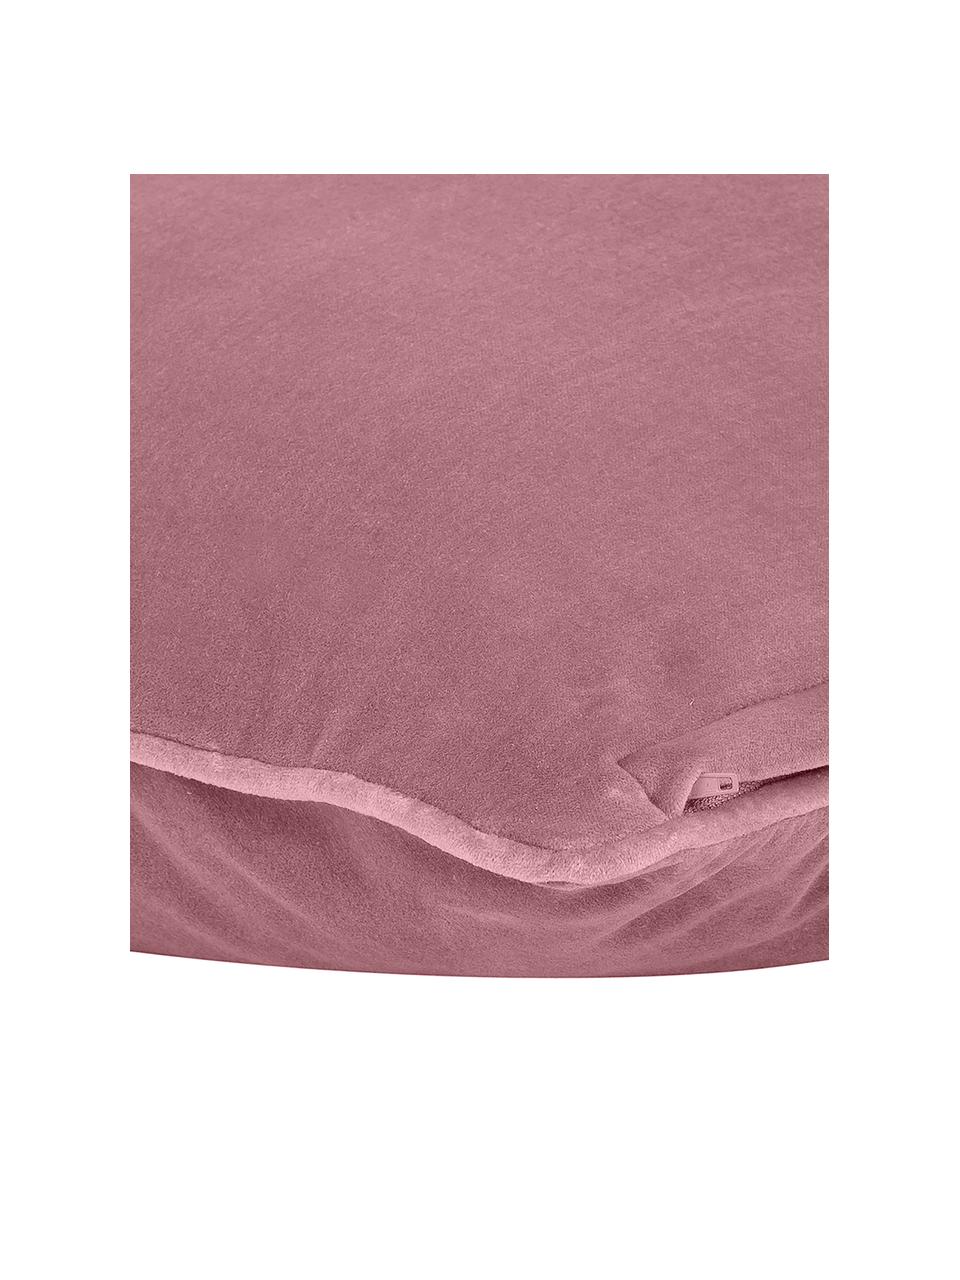 Poszewka na poduszkę z aksamitu Dana, 100% aksamit bawełniany, Brudny różowy, S 30 x D 50 cm